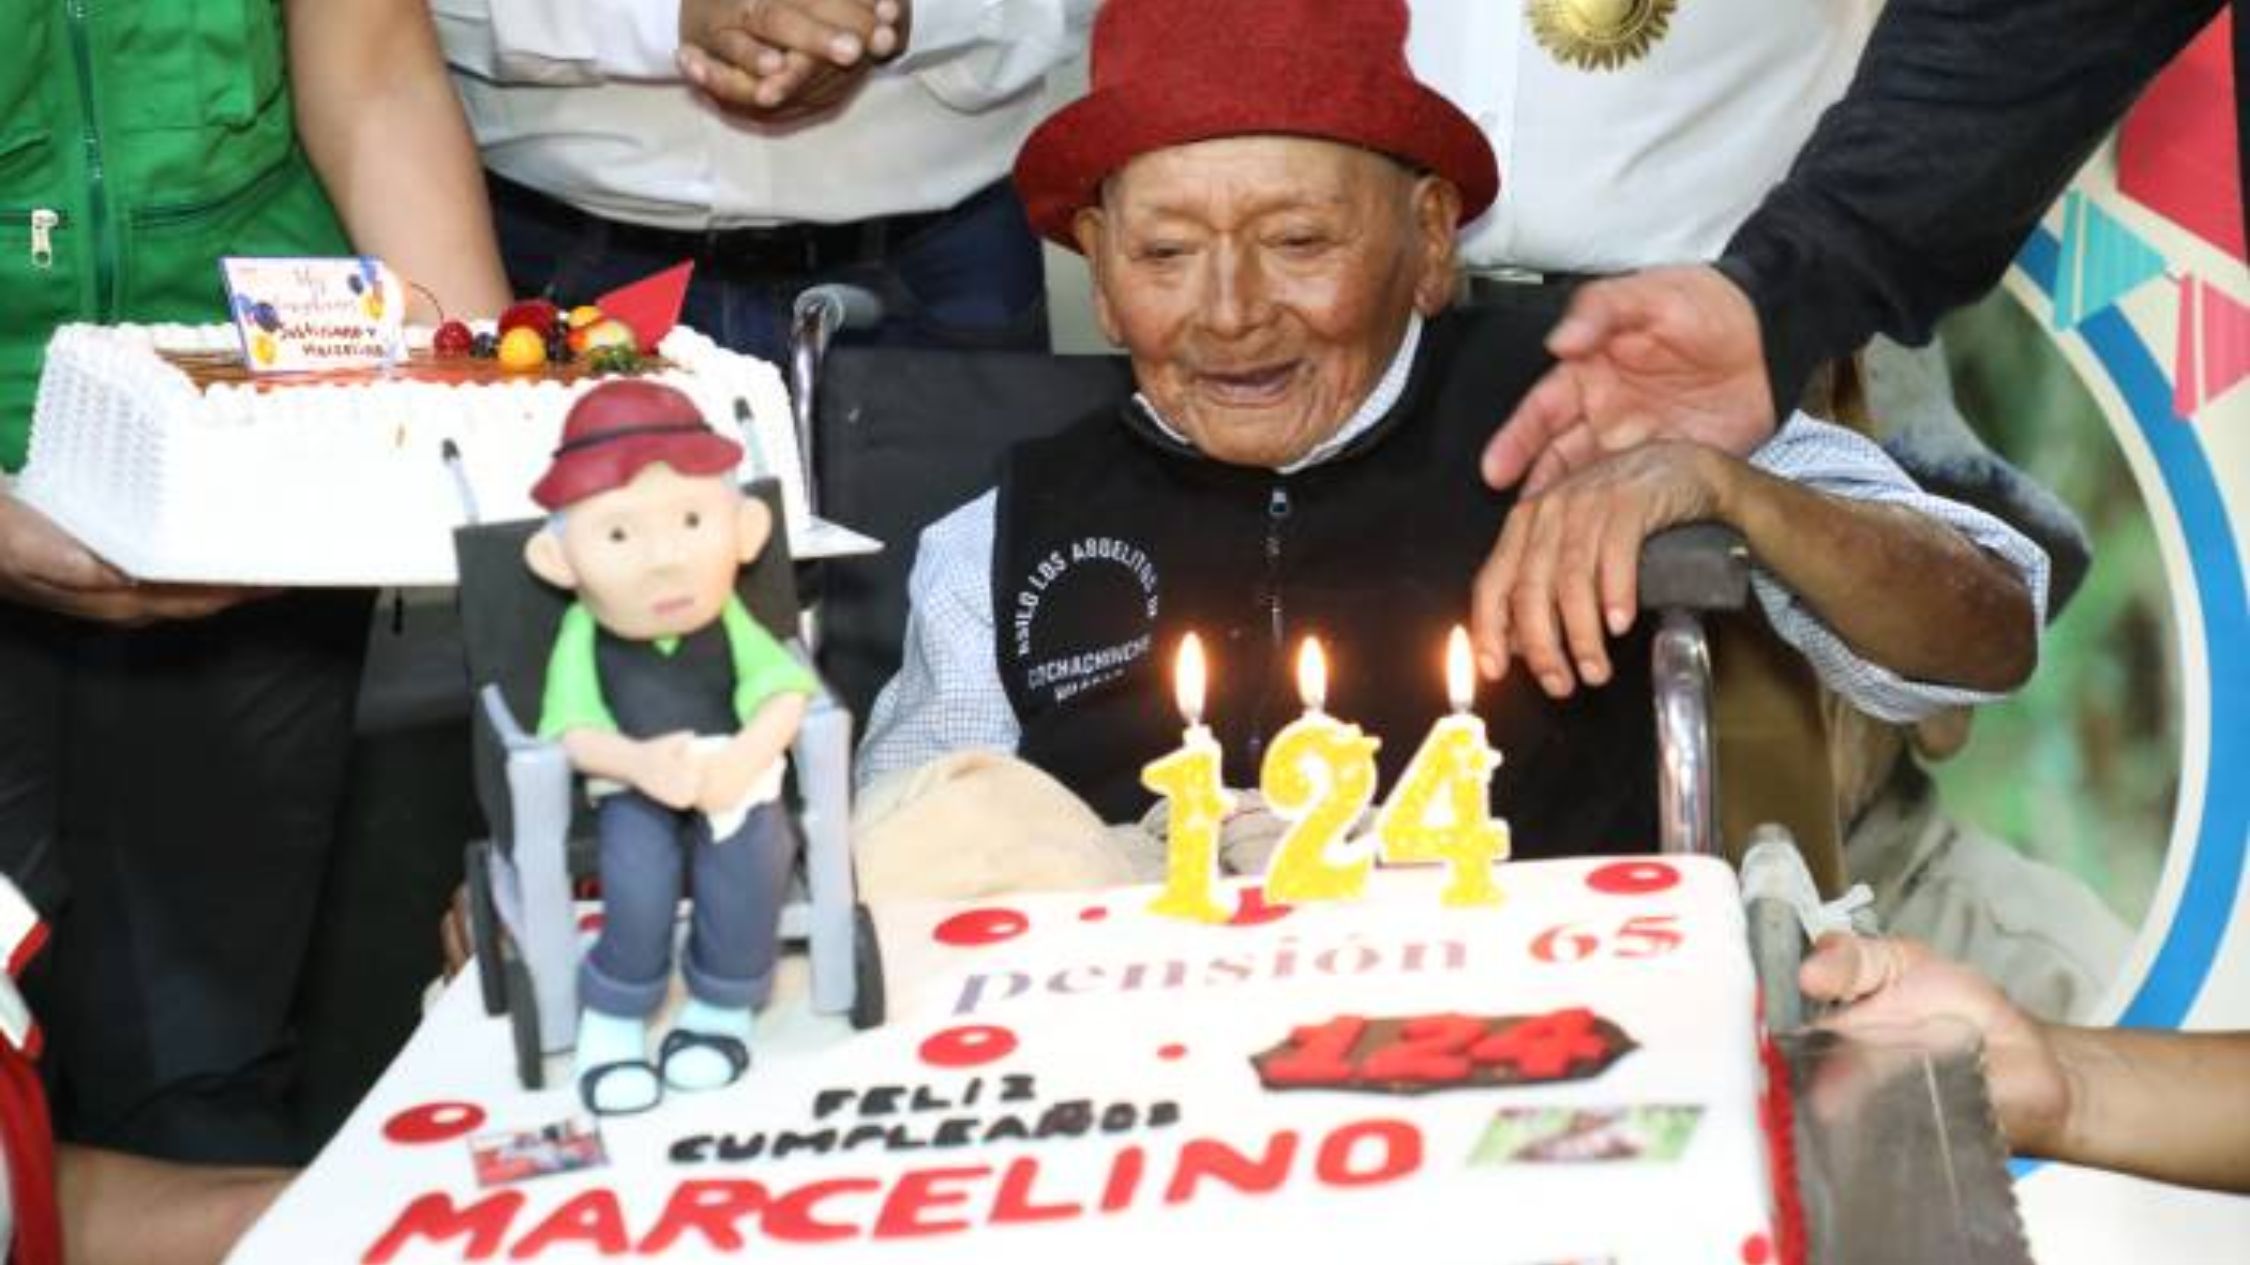 Las autoridades peruanas dicen que Marcelino Abad Tolentino cumplió 124 años el pasado 5 de abril. (Crédito: Gobierno de Perú)